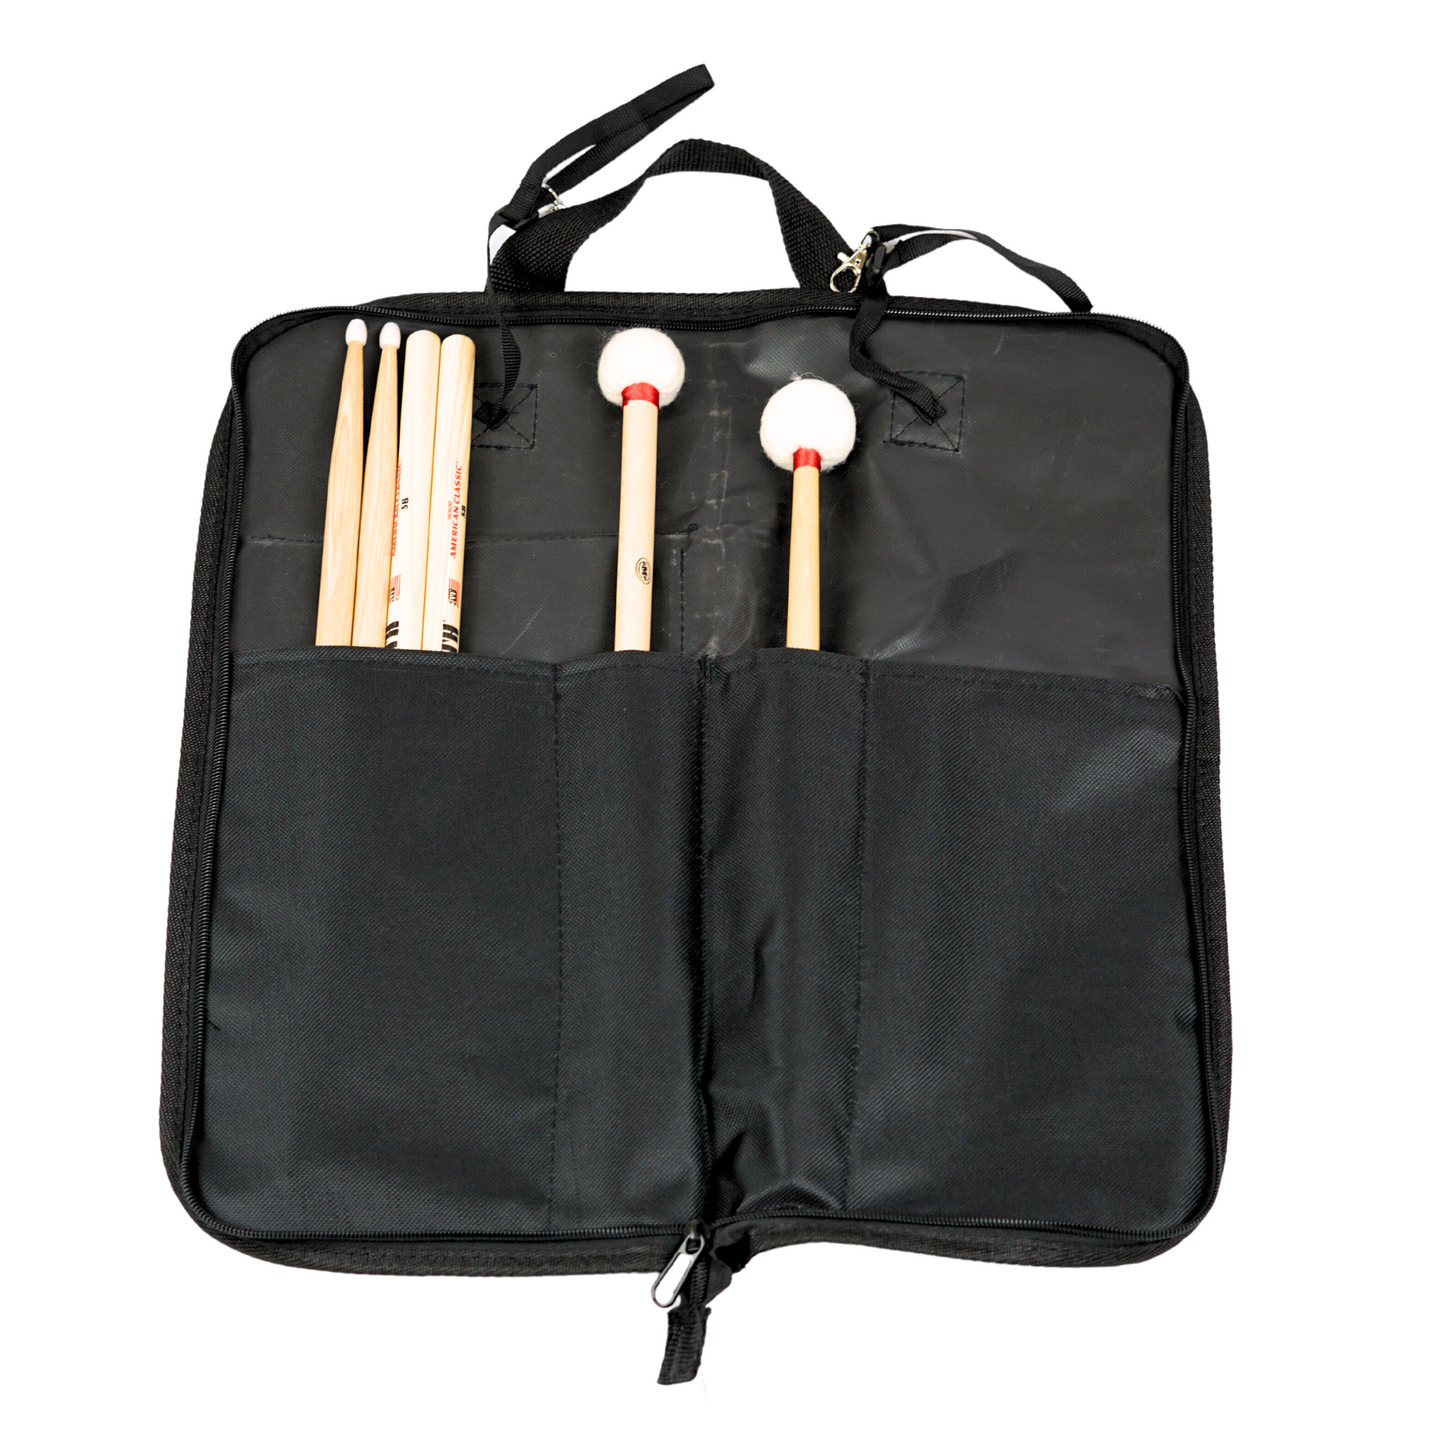 Stick & Mallet Bag FL-BAG-DB1-BK